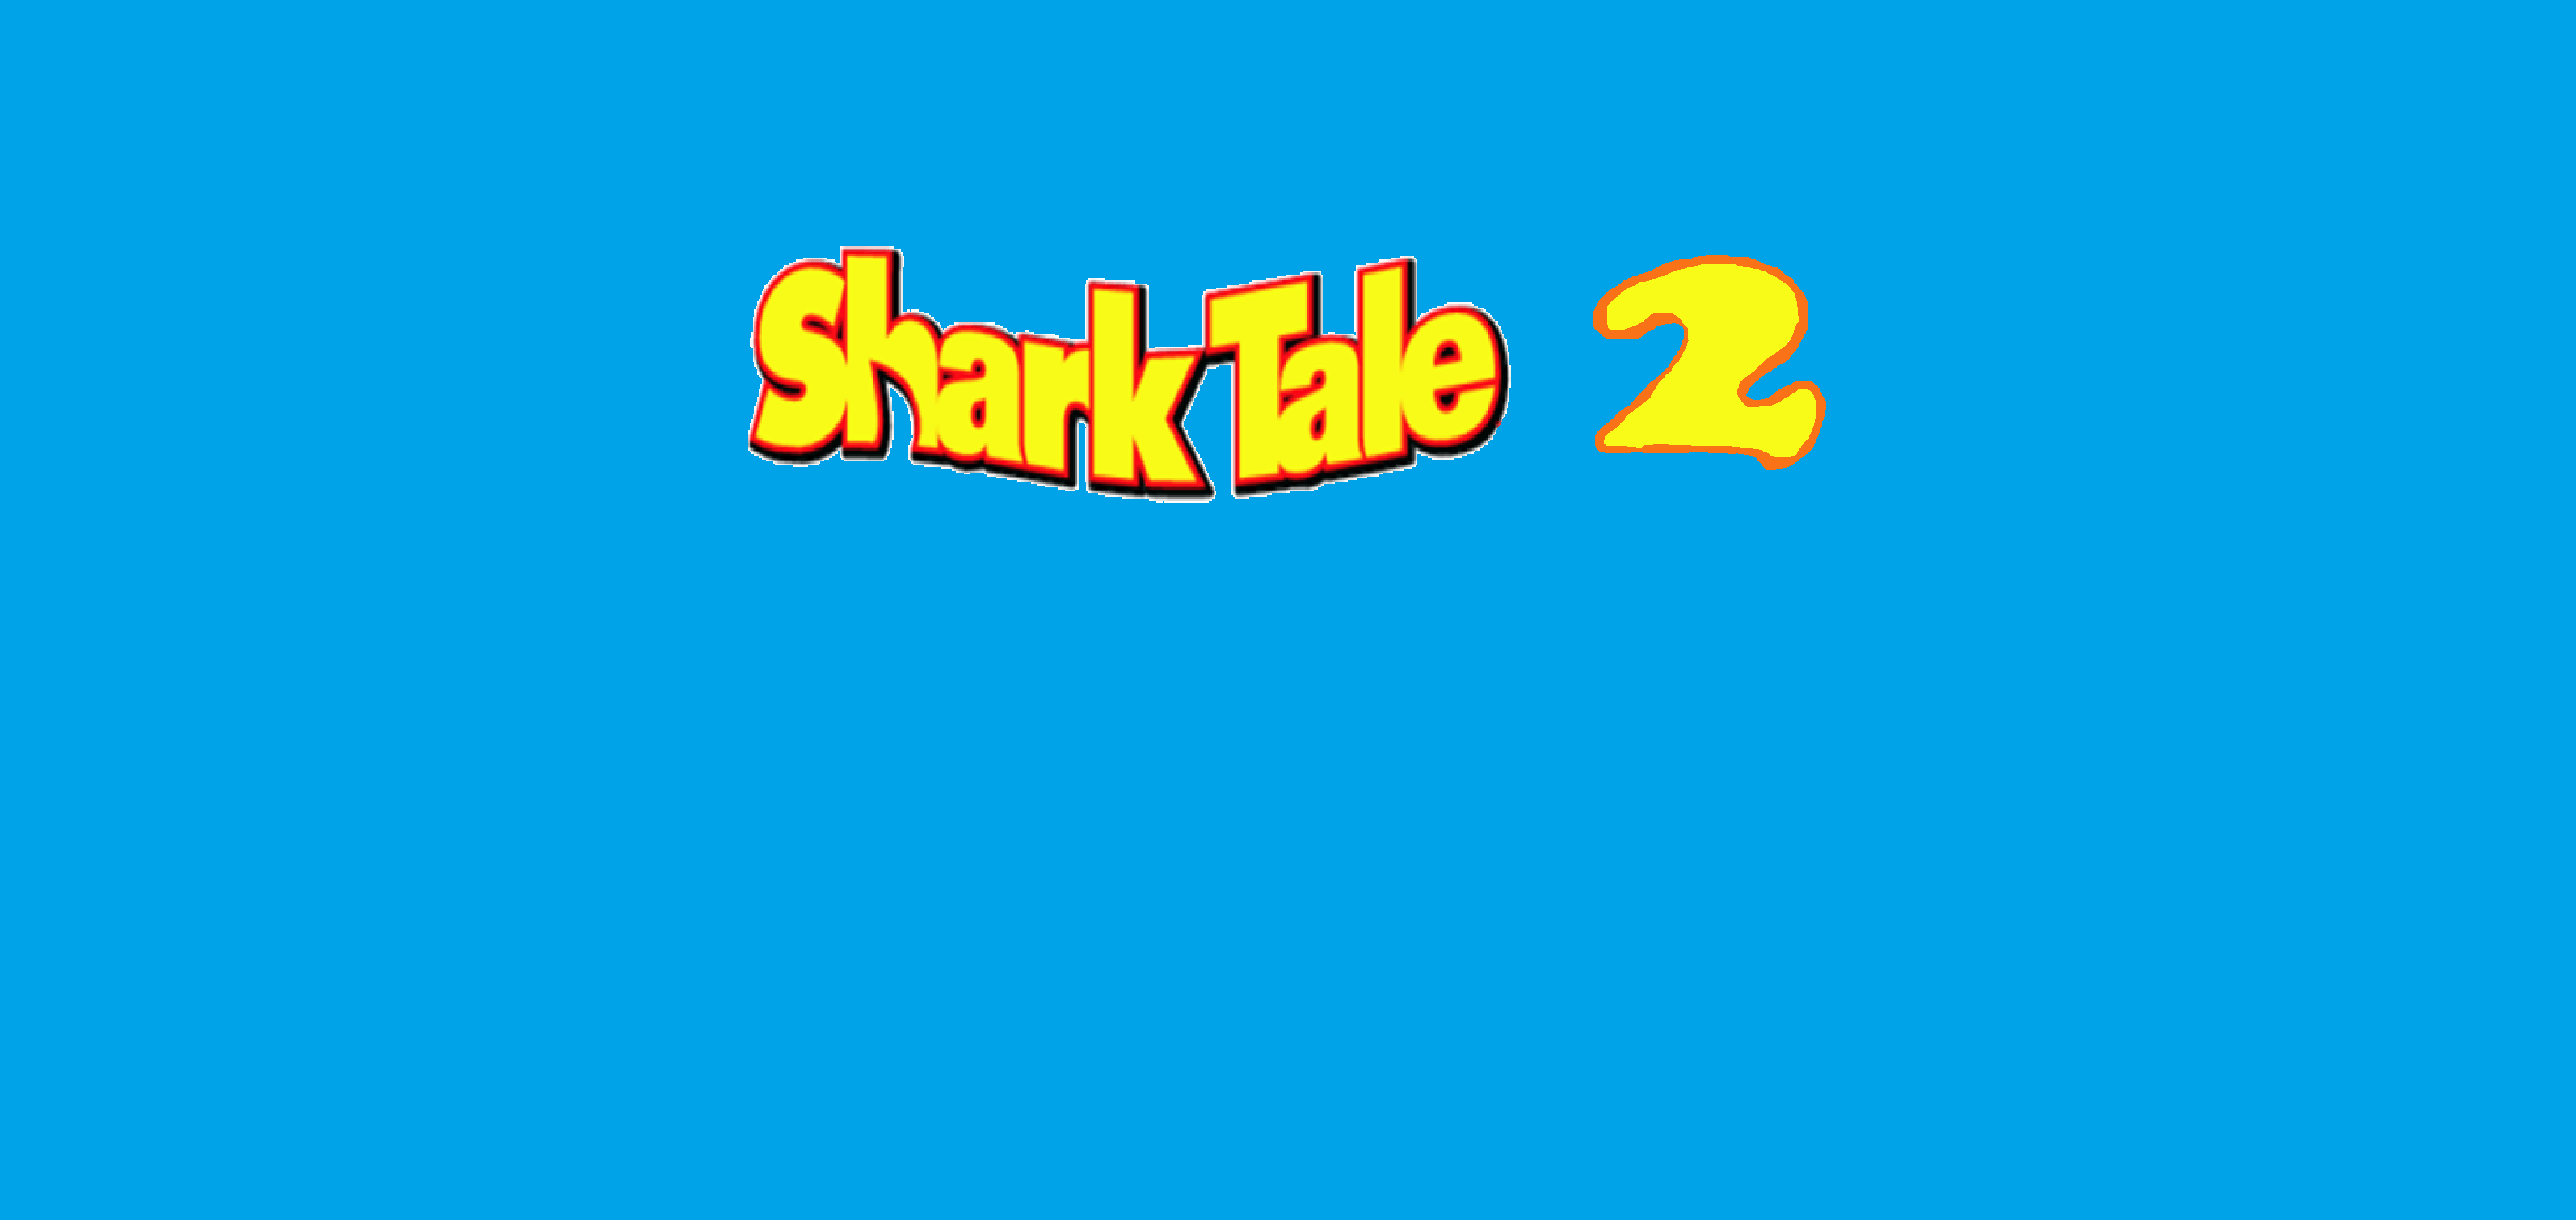 Shark Tale Logo - Shark Tale 2 (2019 3D animated comedy movie)